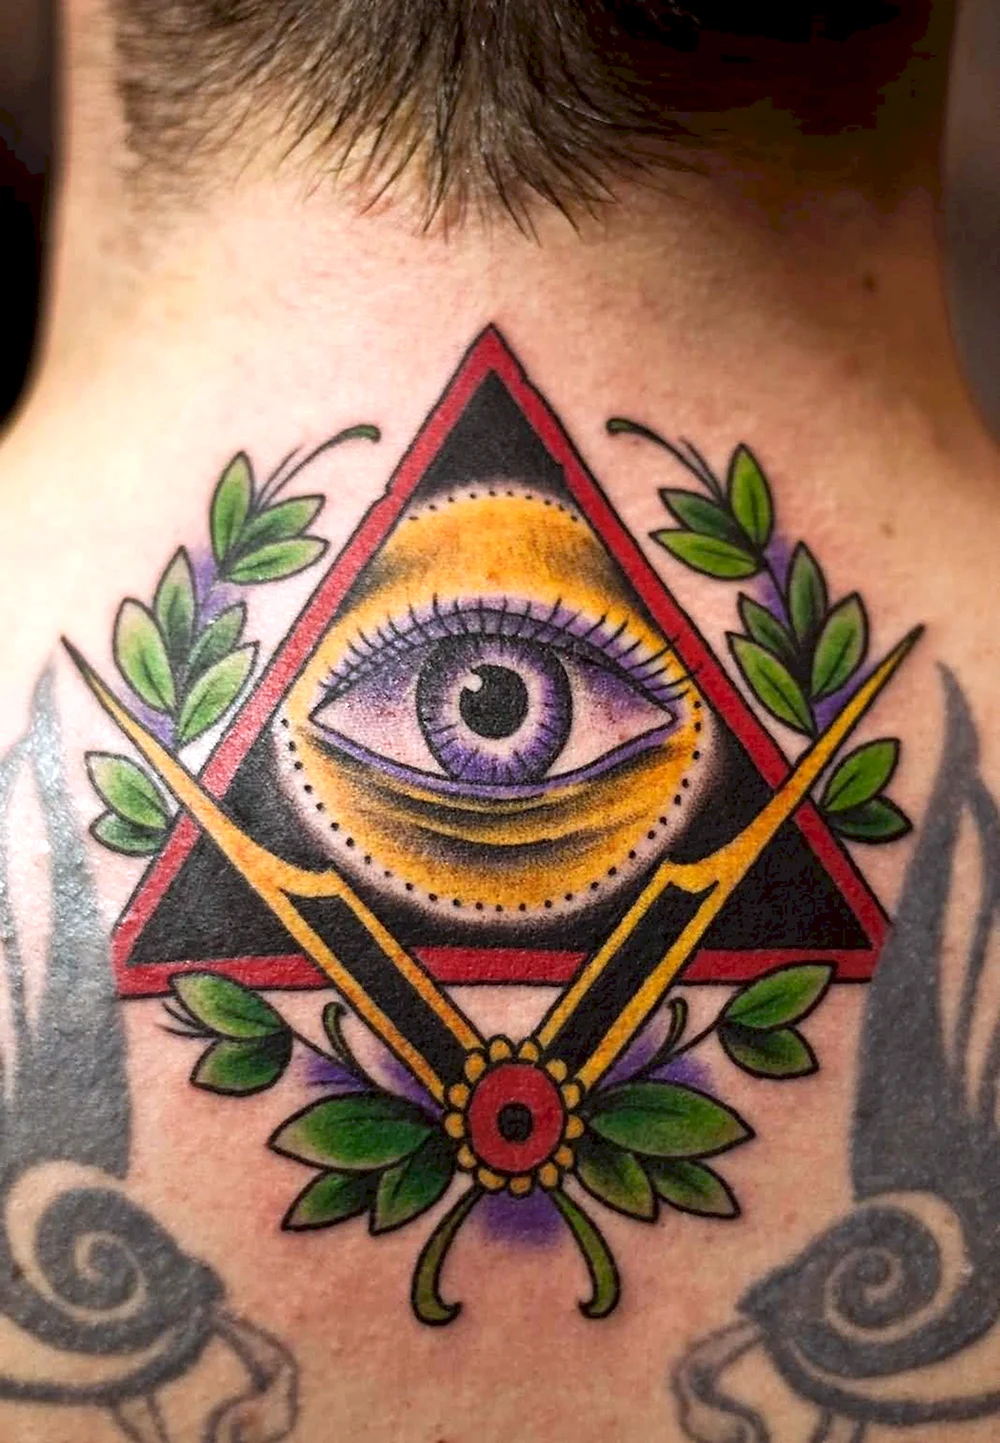 Illuminati Triangle Tattoo